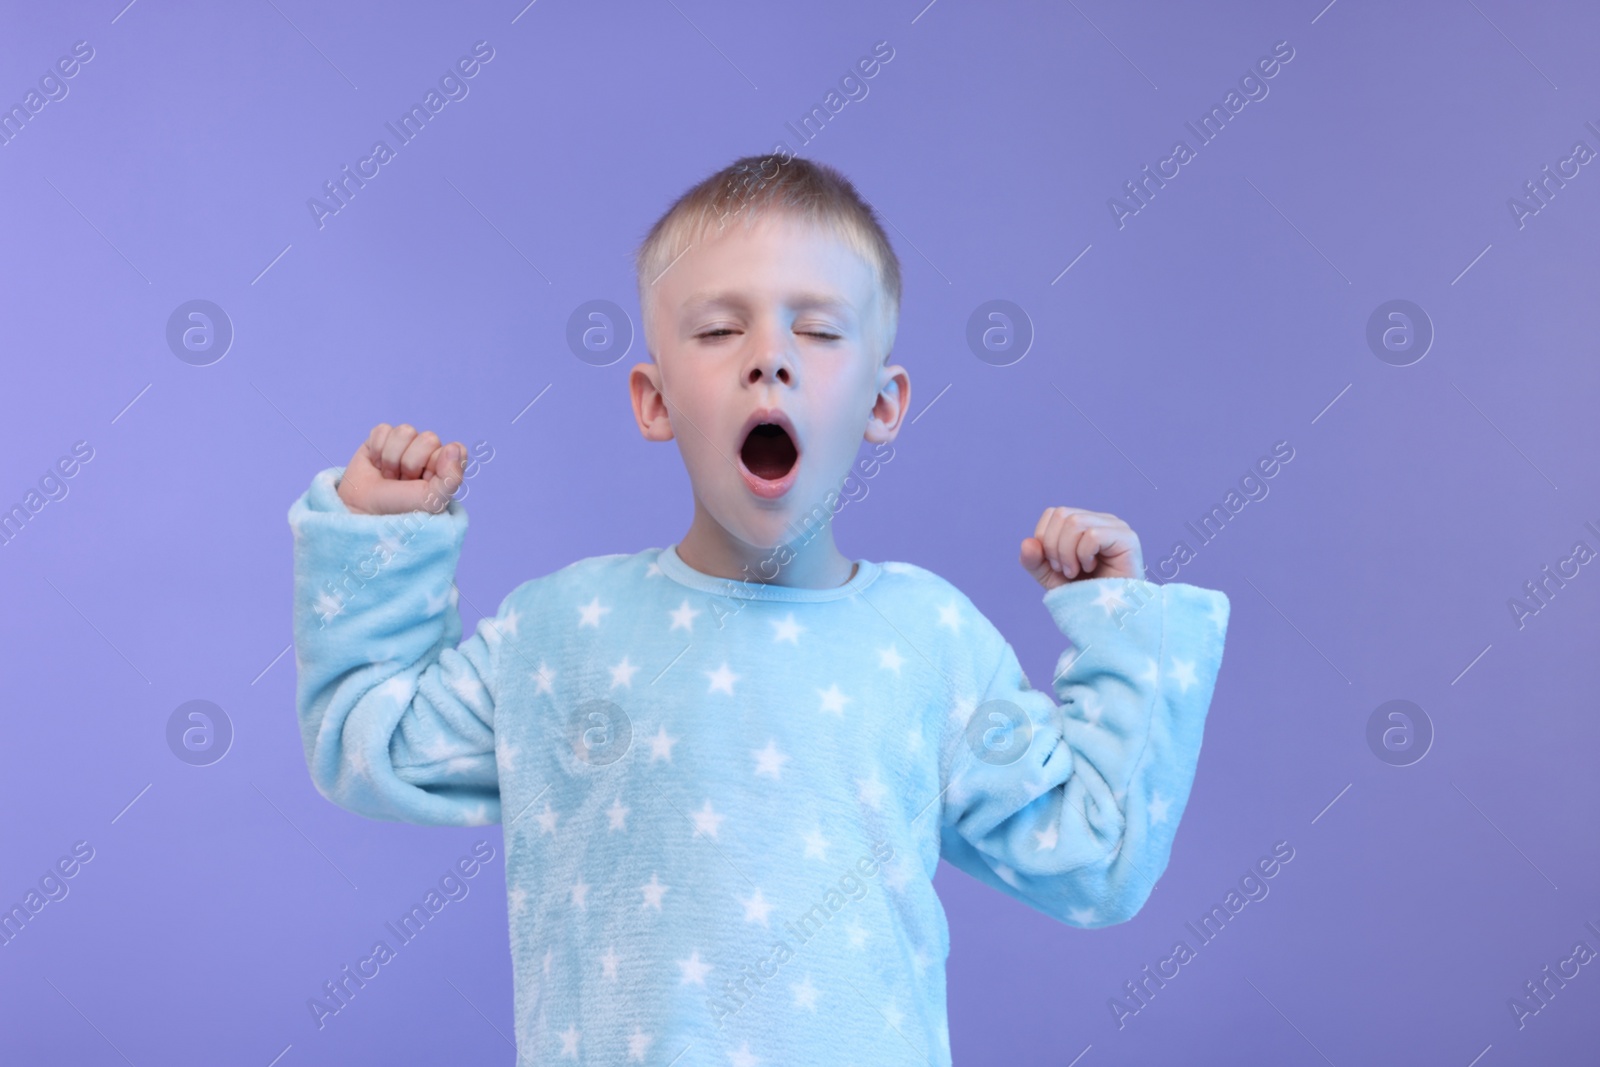 Photo of Sleepy boy yawning on purple background. Insomnia problem